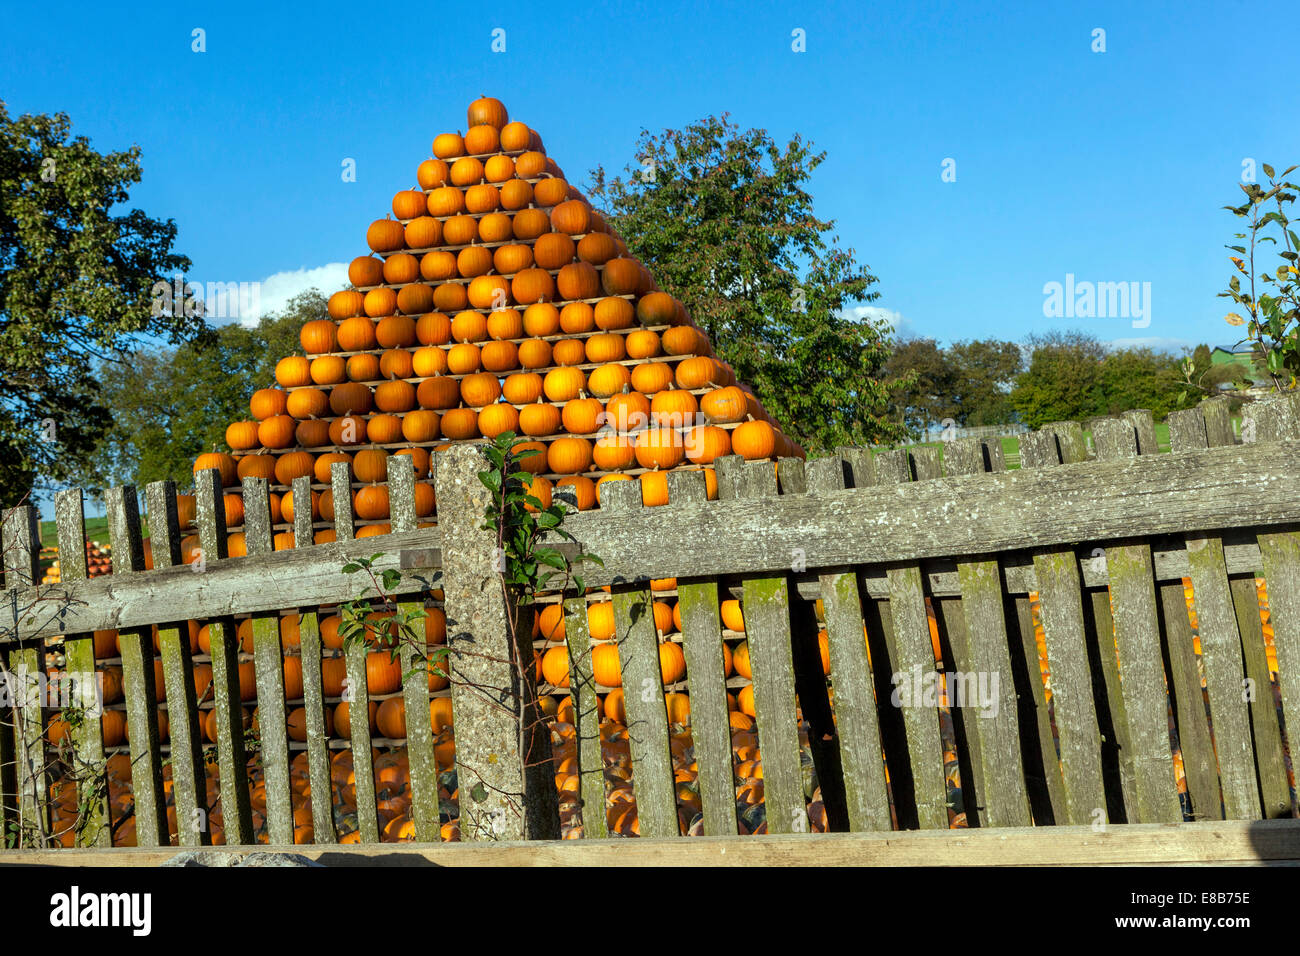 Fattoria di zucche, zucche arancioni accatastate a forma di piramide, recinzione, cielo sfondo Foto Stock